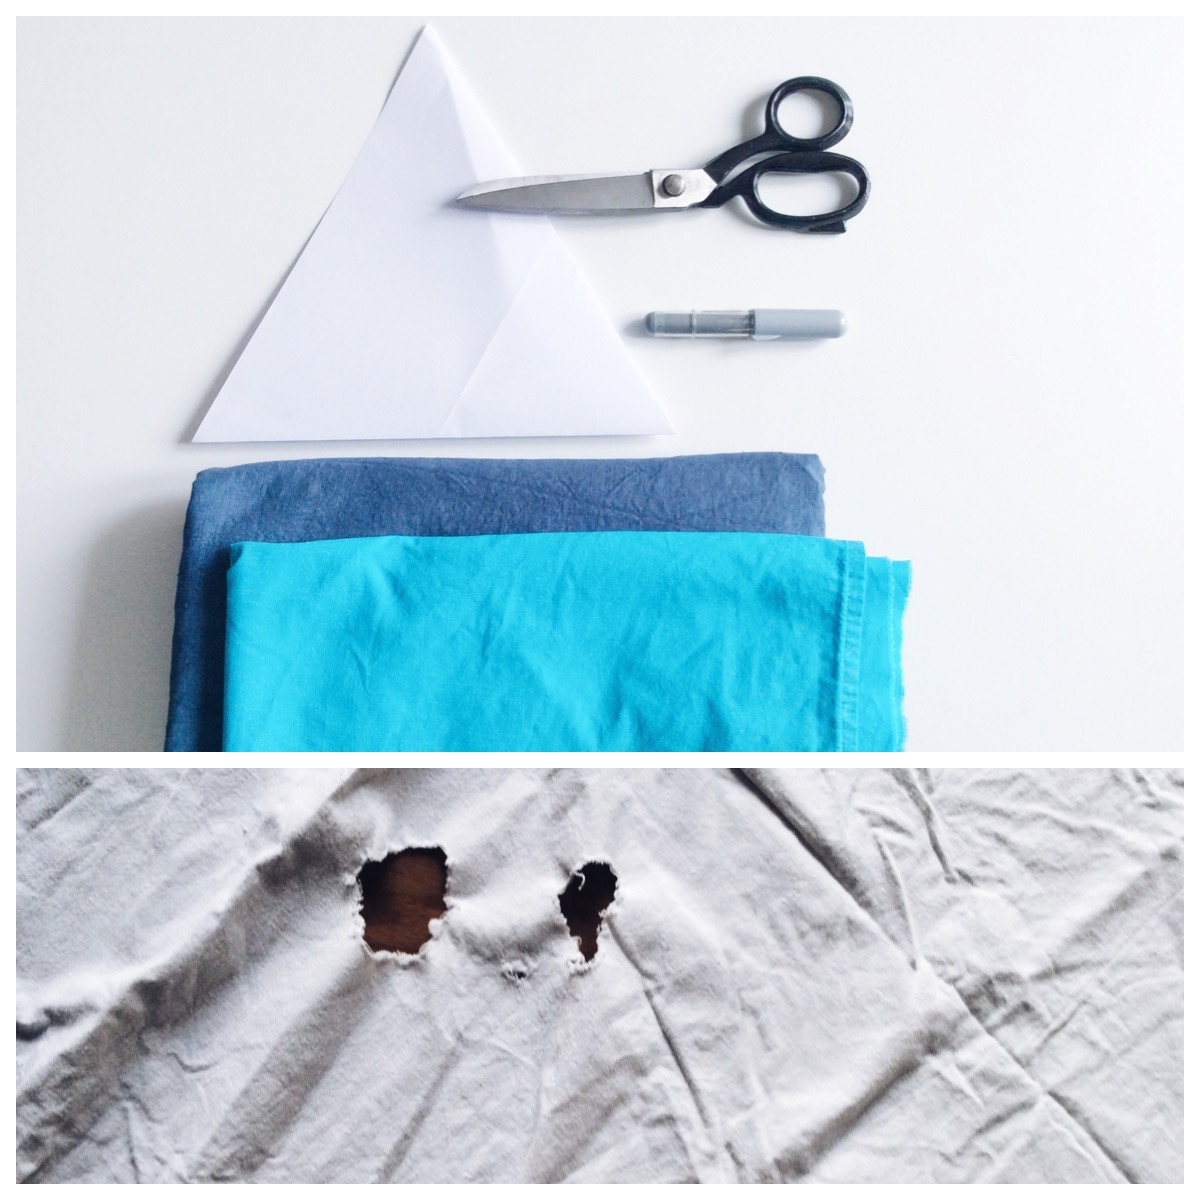 Nähanleitung und Material für Triangel-Kissen, material for sewing triangle cushion, tutorial